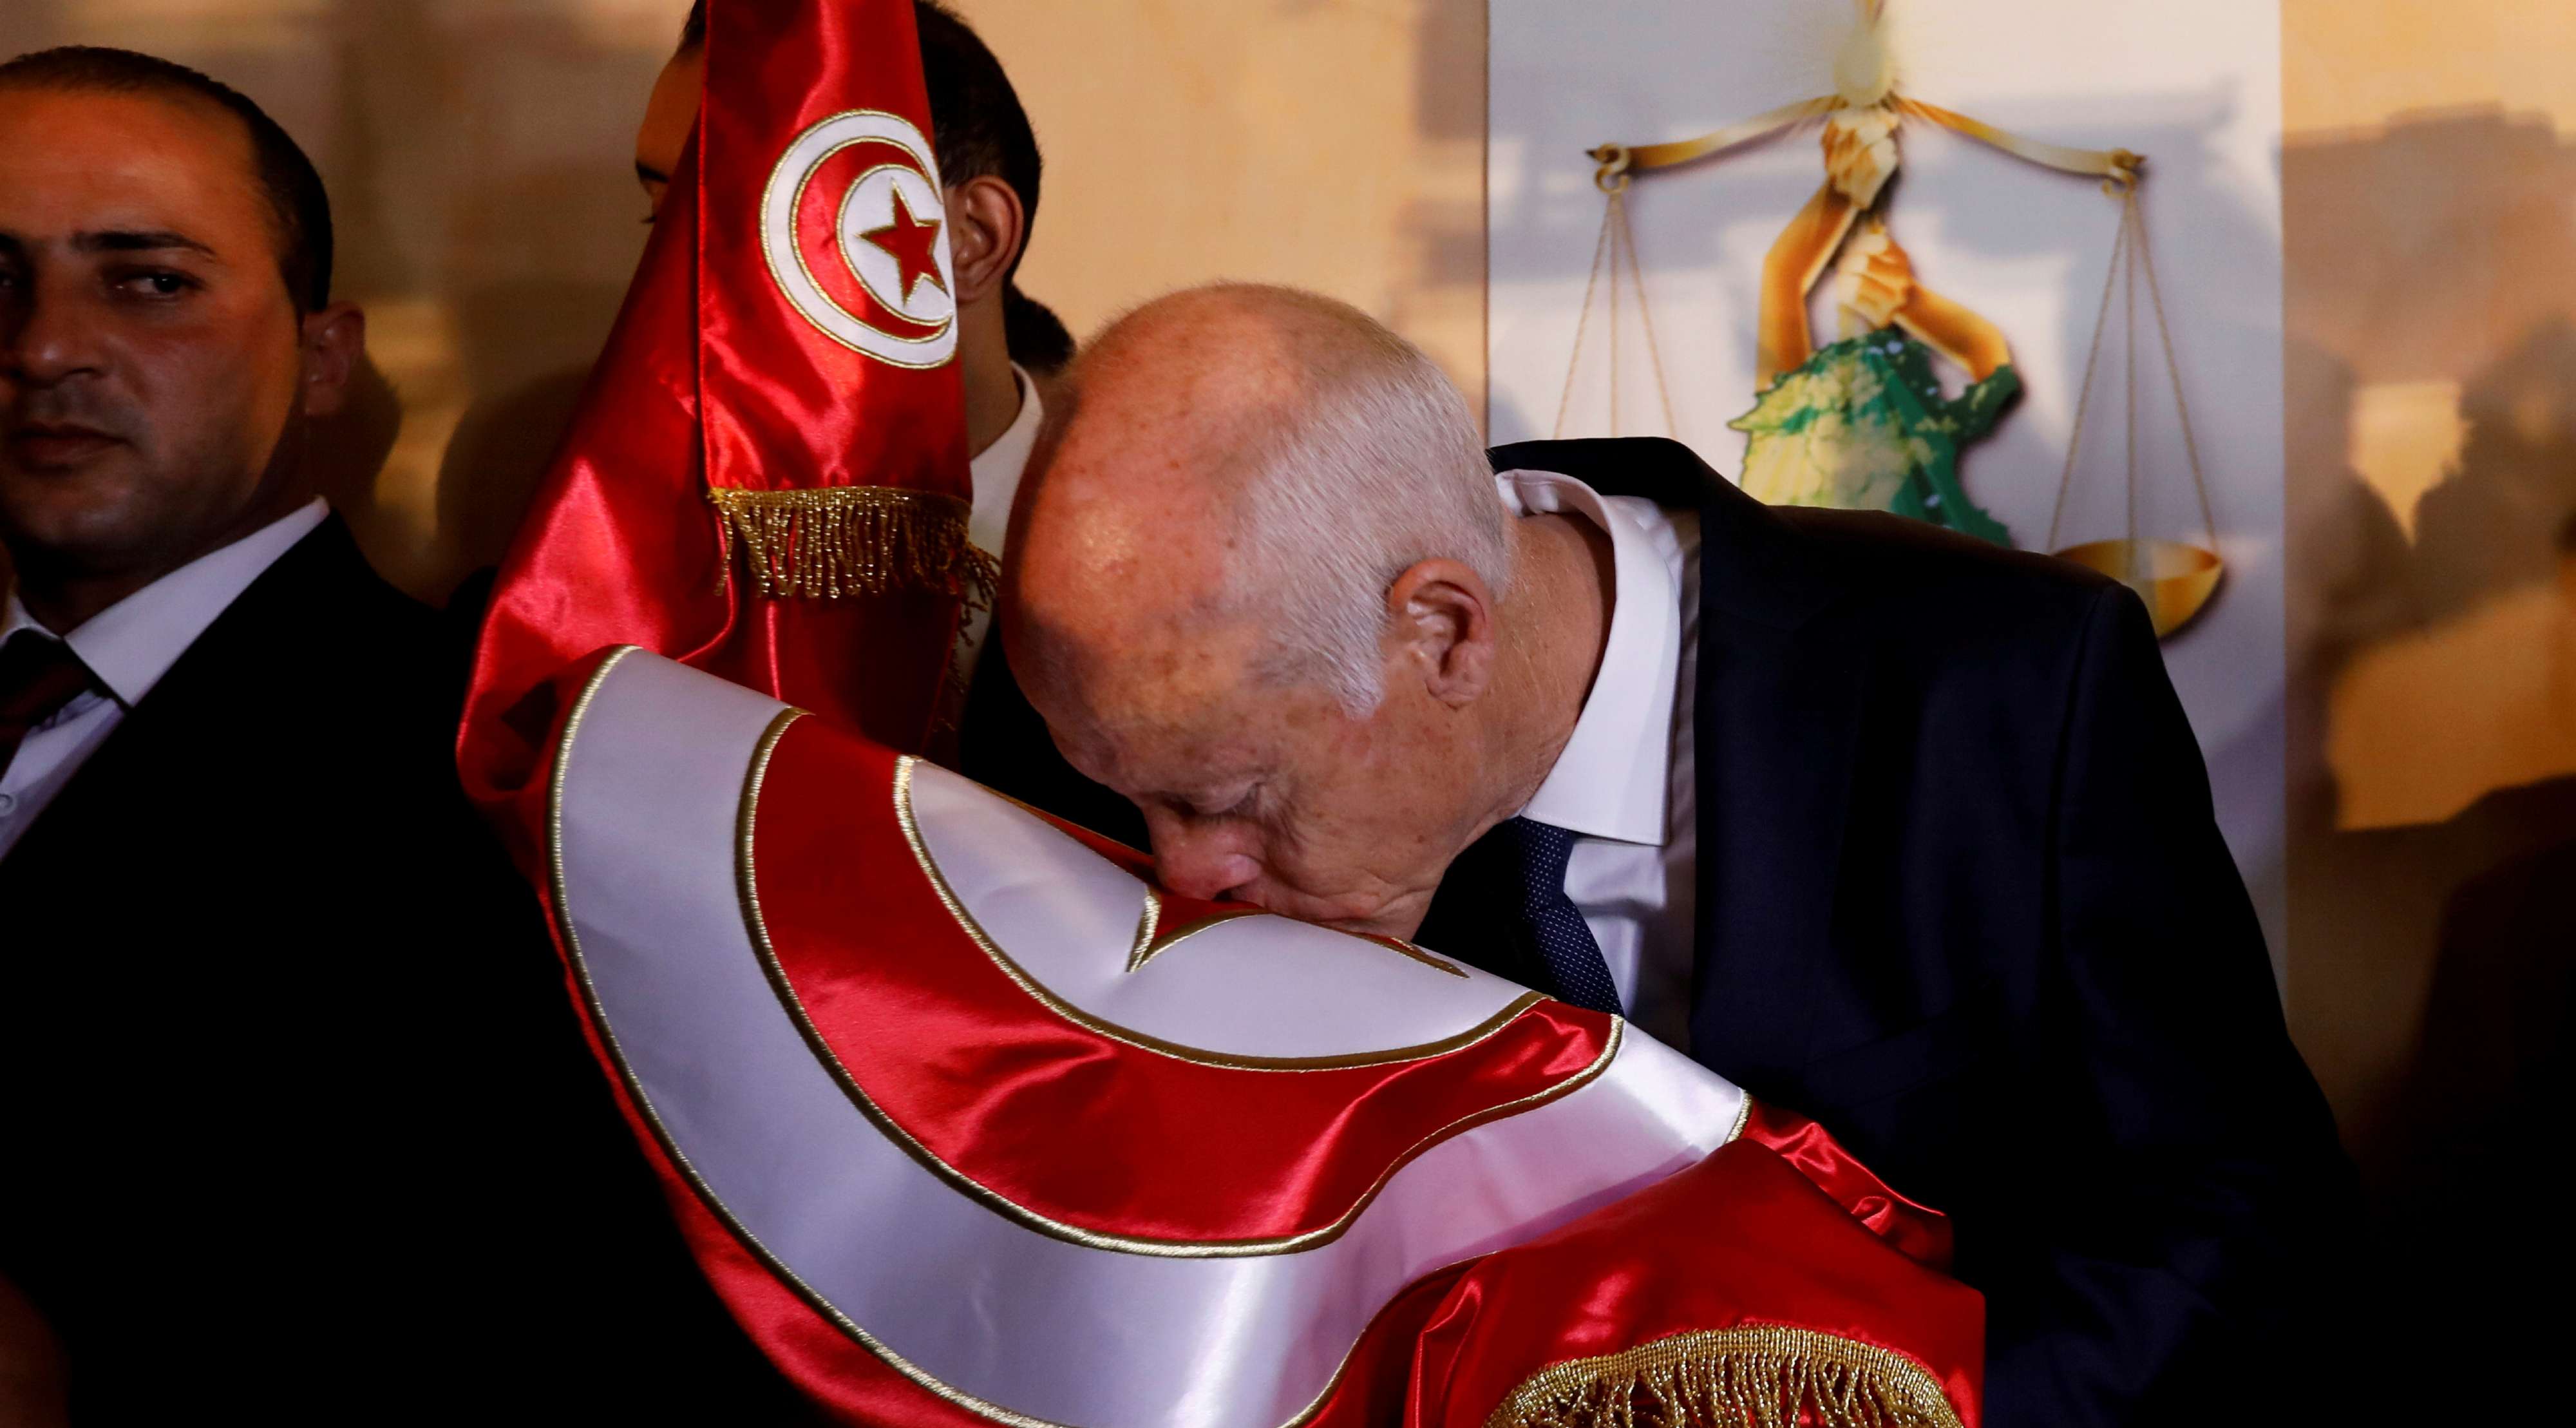 الرئيس التونسي يواصل اتخاذ تدابير صارمة في حملة واسعة على الفساد